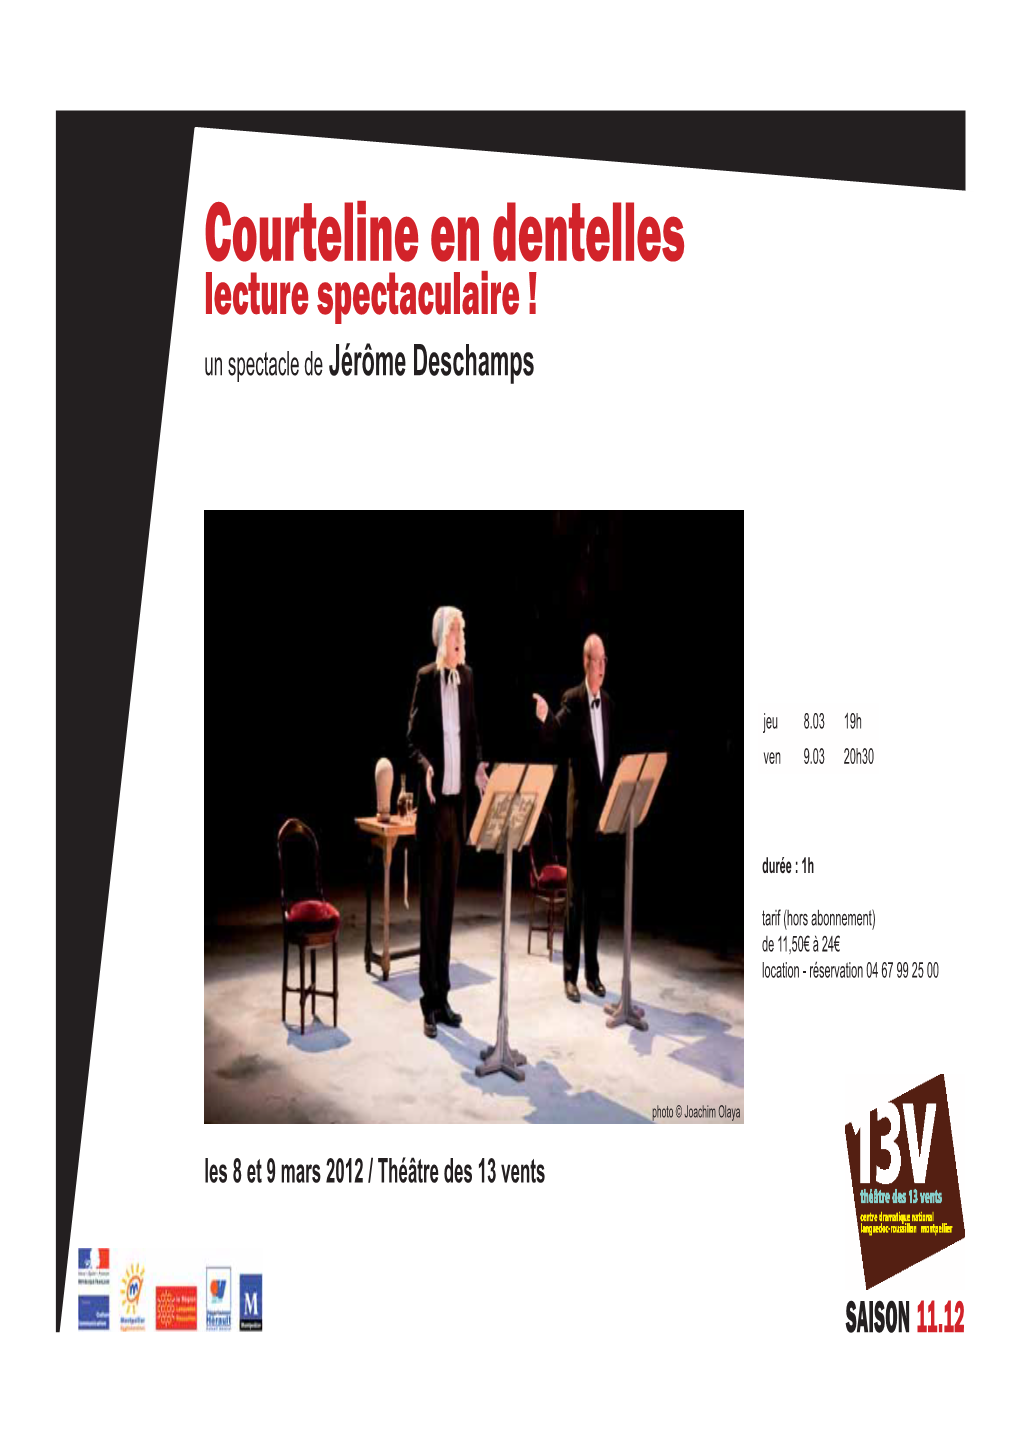 Courteline En Dentelles Lecture Spectaculaire ! Un Spectacle De Jérôme Deschamps